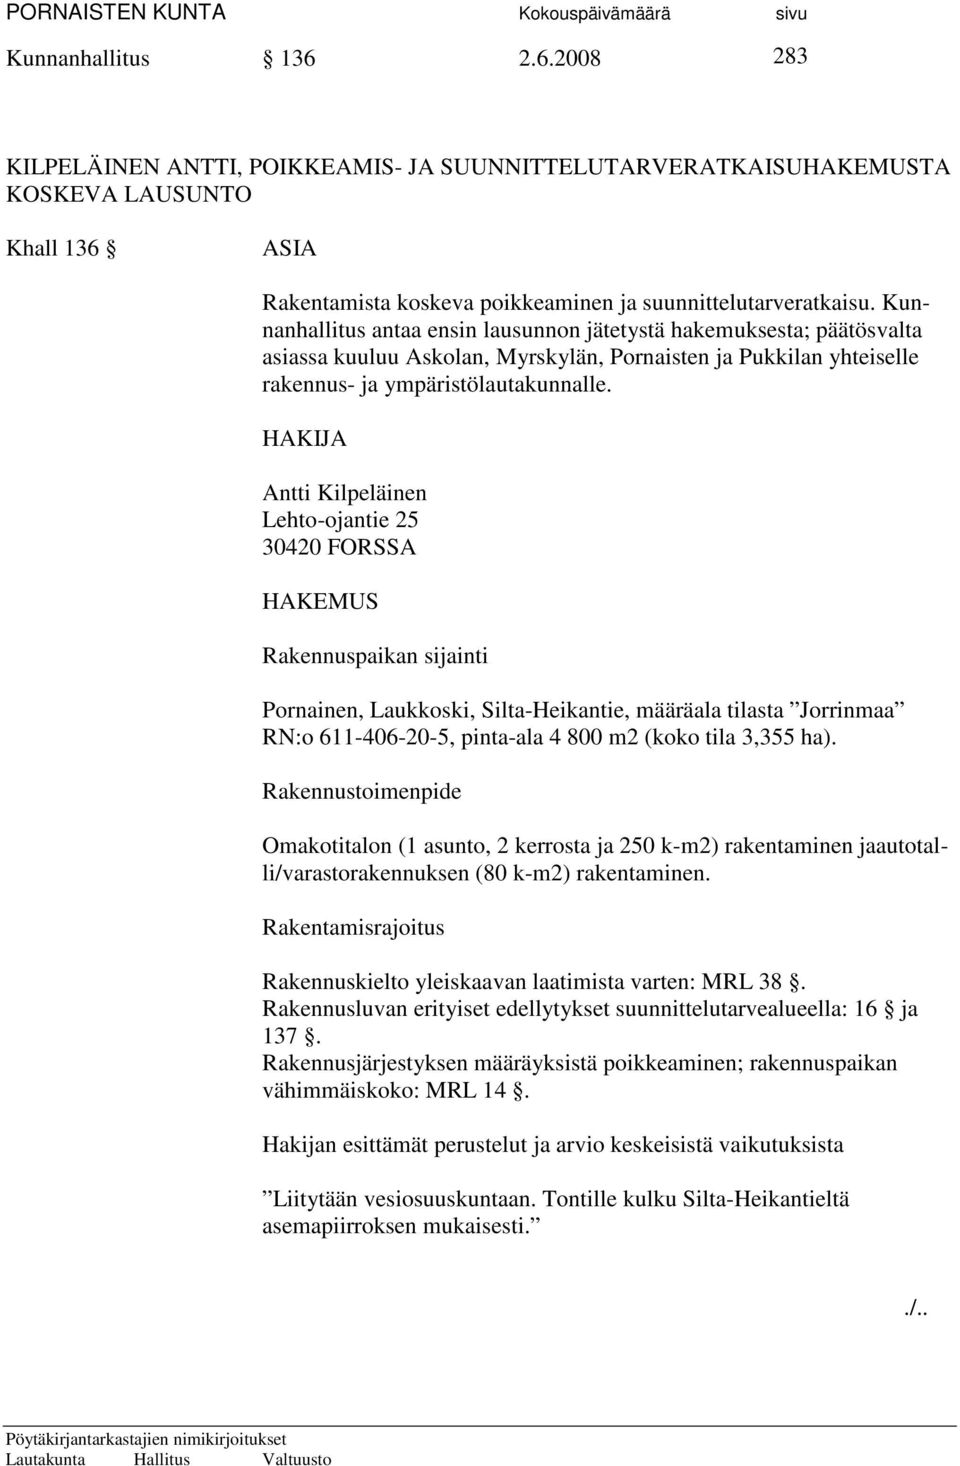 HAKIJA Antti Kilpeläinen Lehto-ojantie 25 30420 FORSSA HAKEMUS Rakennuspaikan sijainti Pornainen, Laukkoski, Silta-Heikantie, määräala tilasta Jorrinmaa RN:o 611-406-20-5, pinta-ala 4 800 m2 (koko